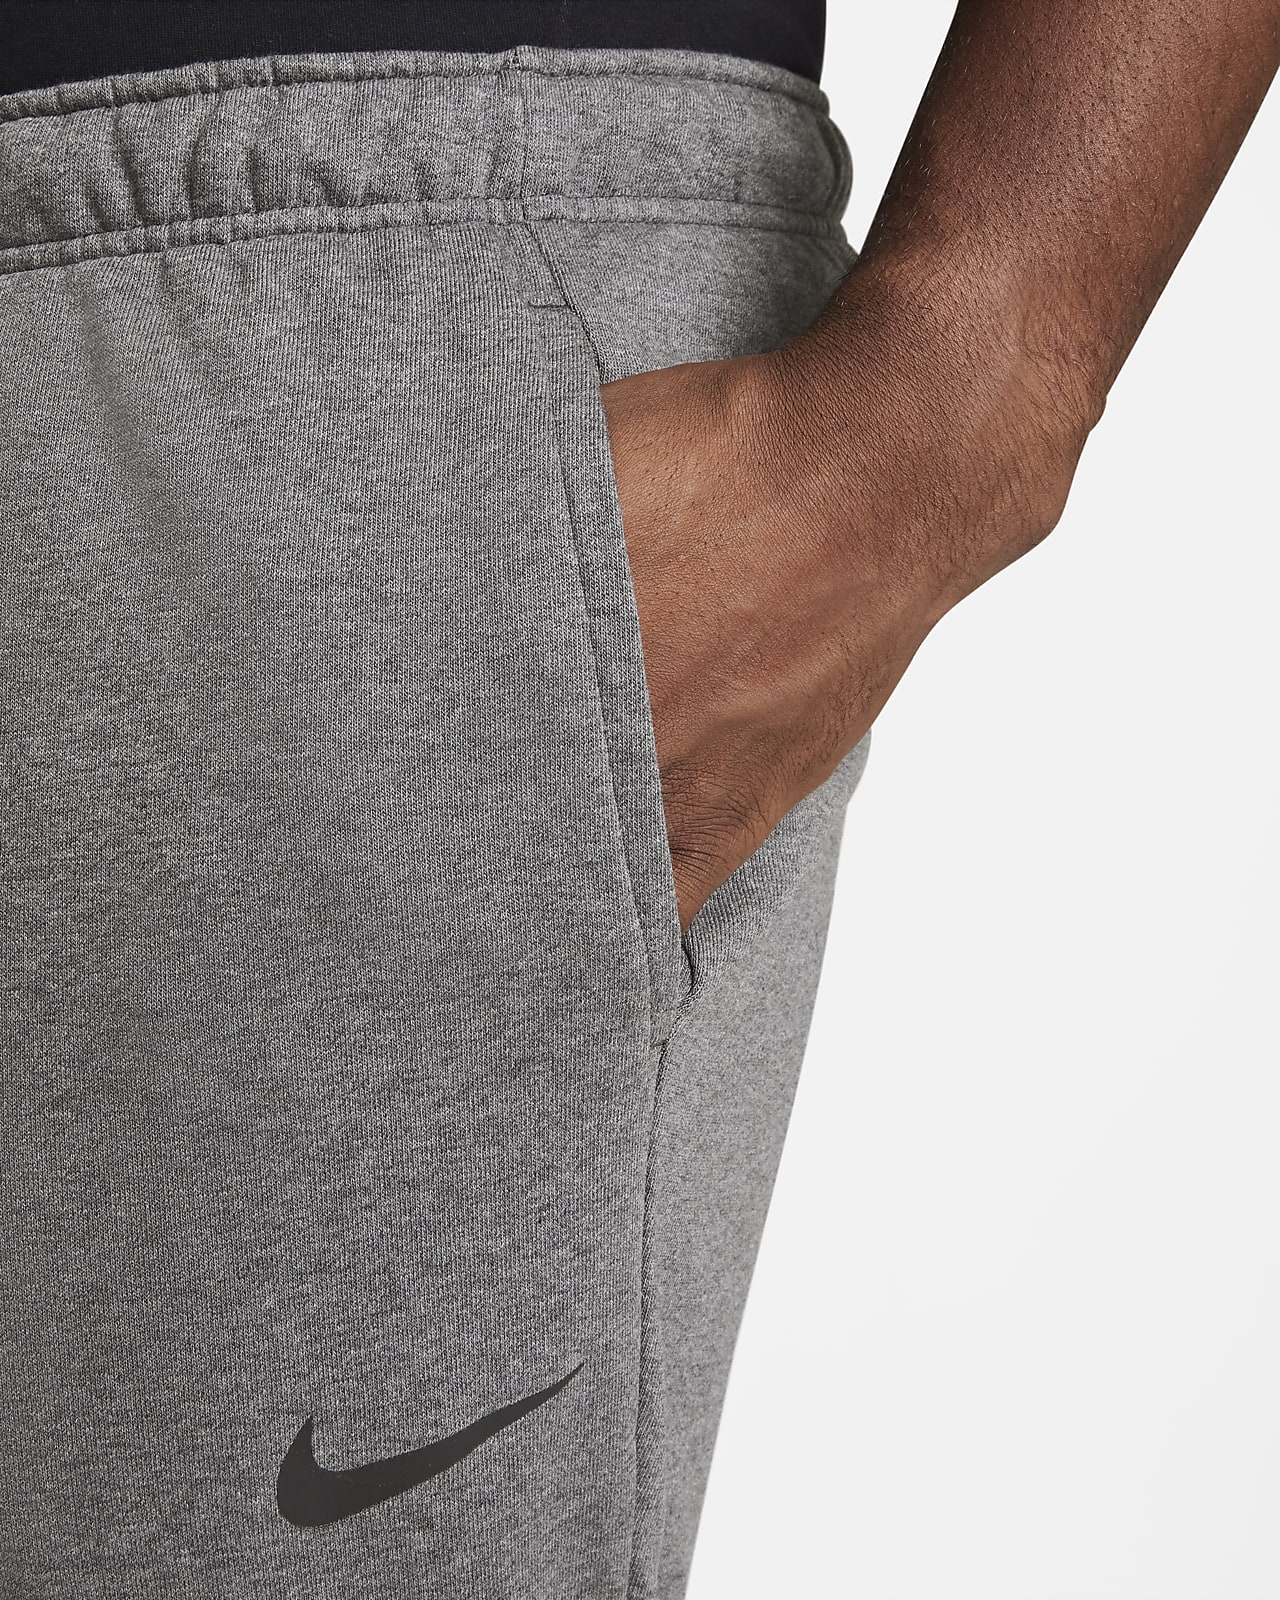 Nike Dri-FIT Men's Tapered Training Pants. Nike.com